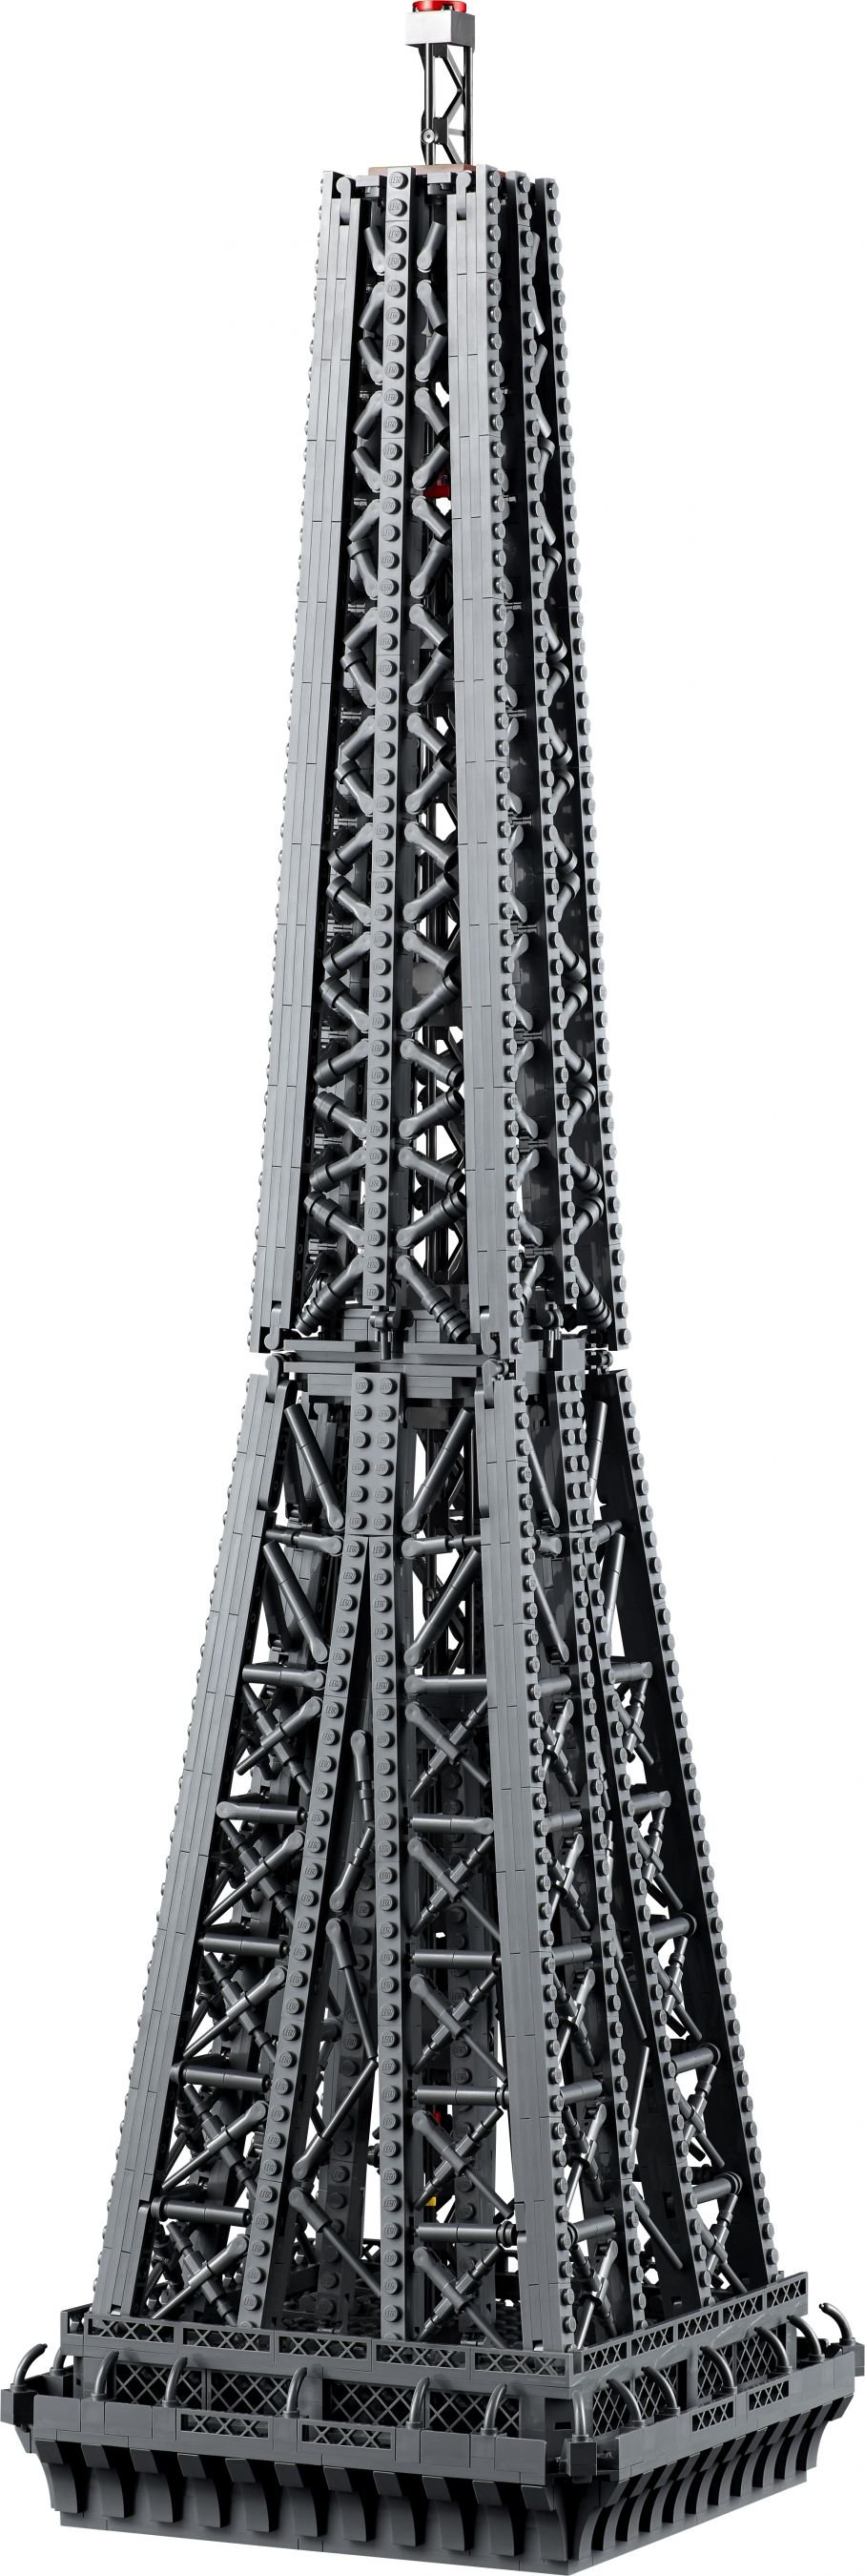 LEGO Advanced Models 10307 Eiffelturm Paris LEGO_10307_alt8.jpg